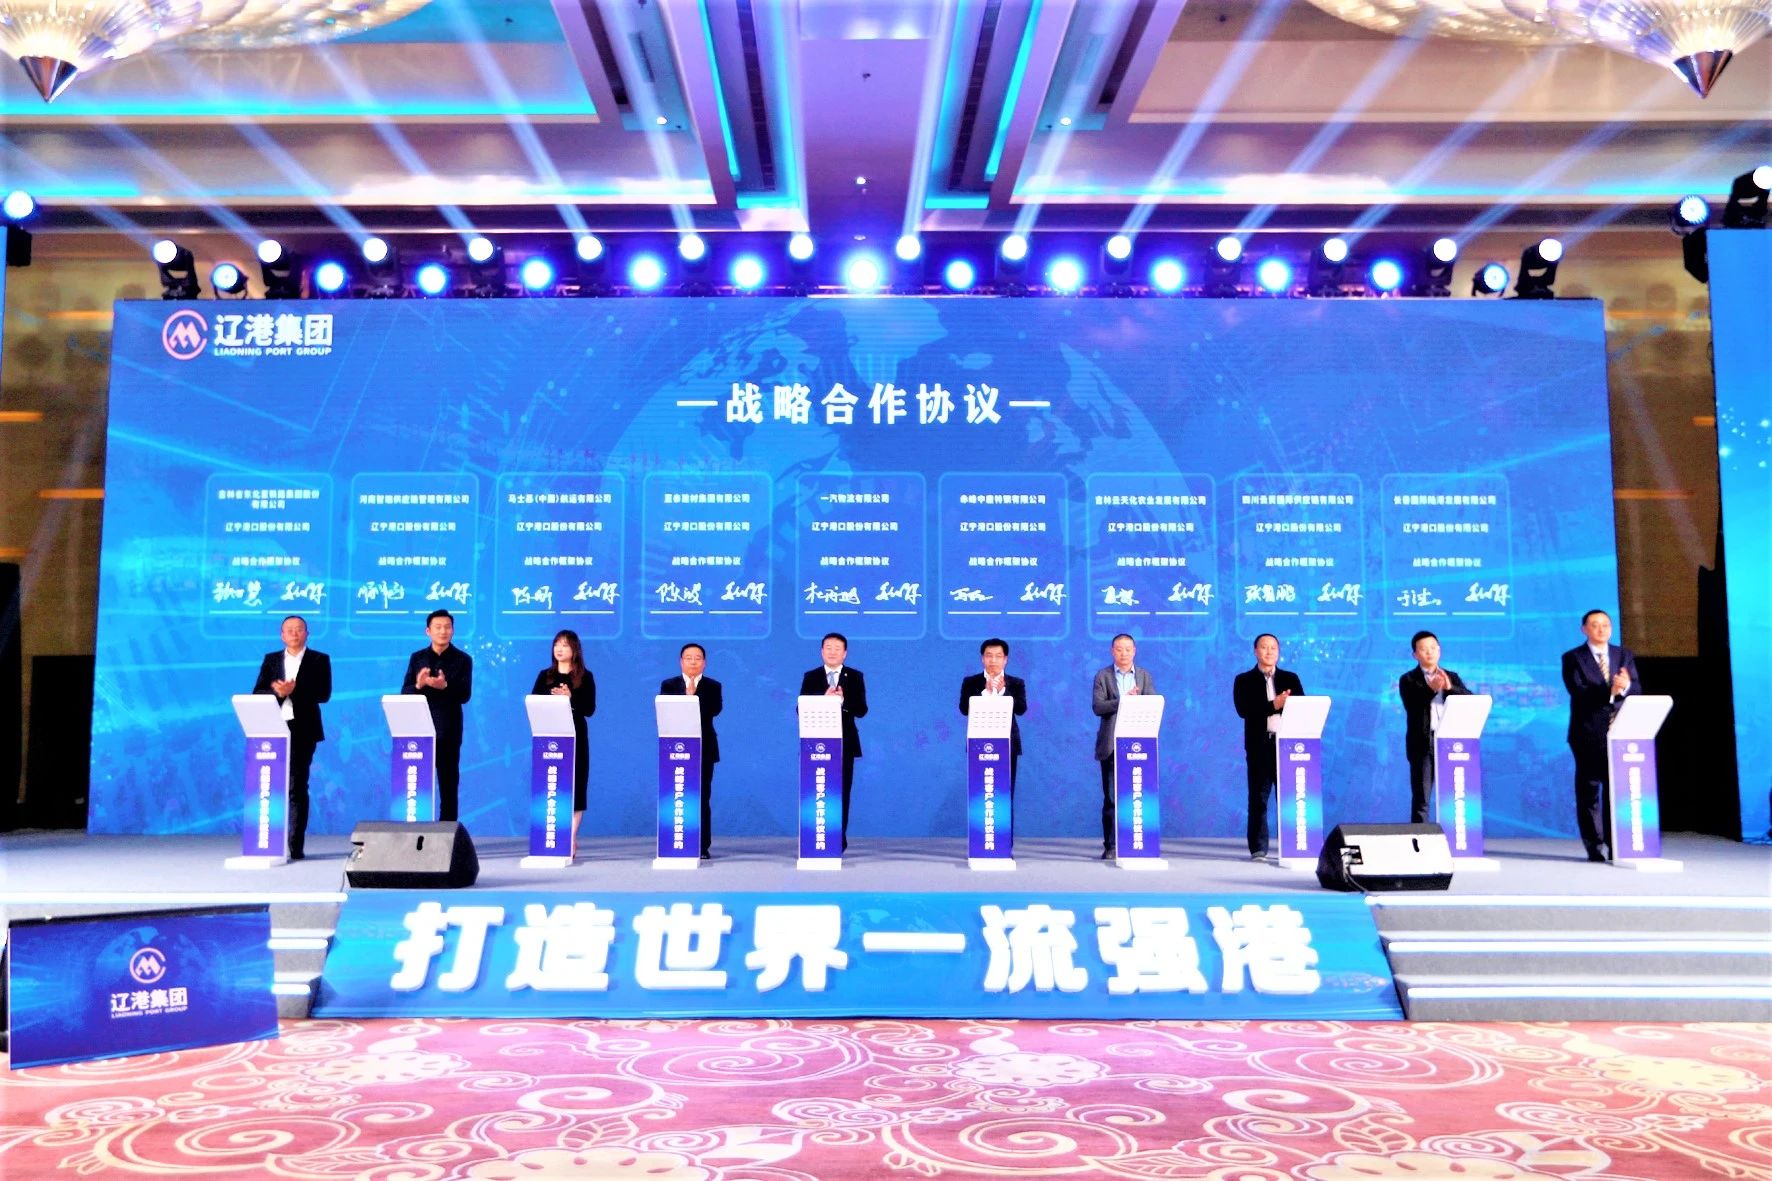 【每日简讯】辽港集团与9家企业签署战略